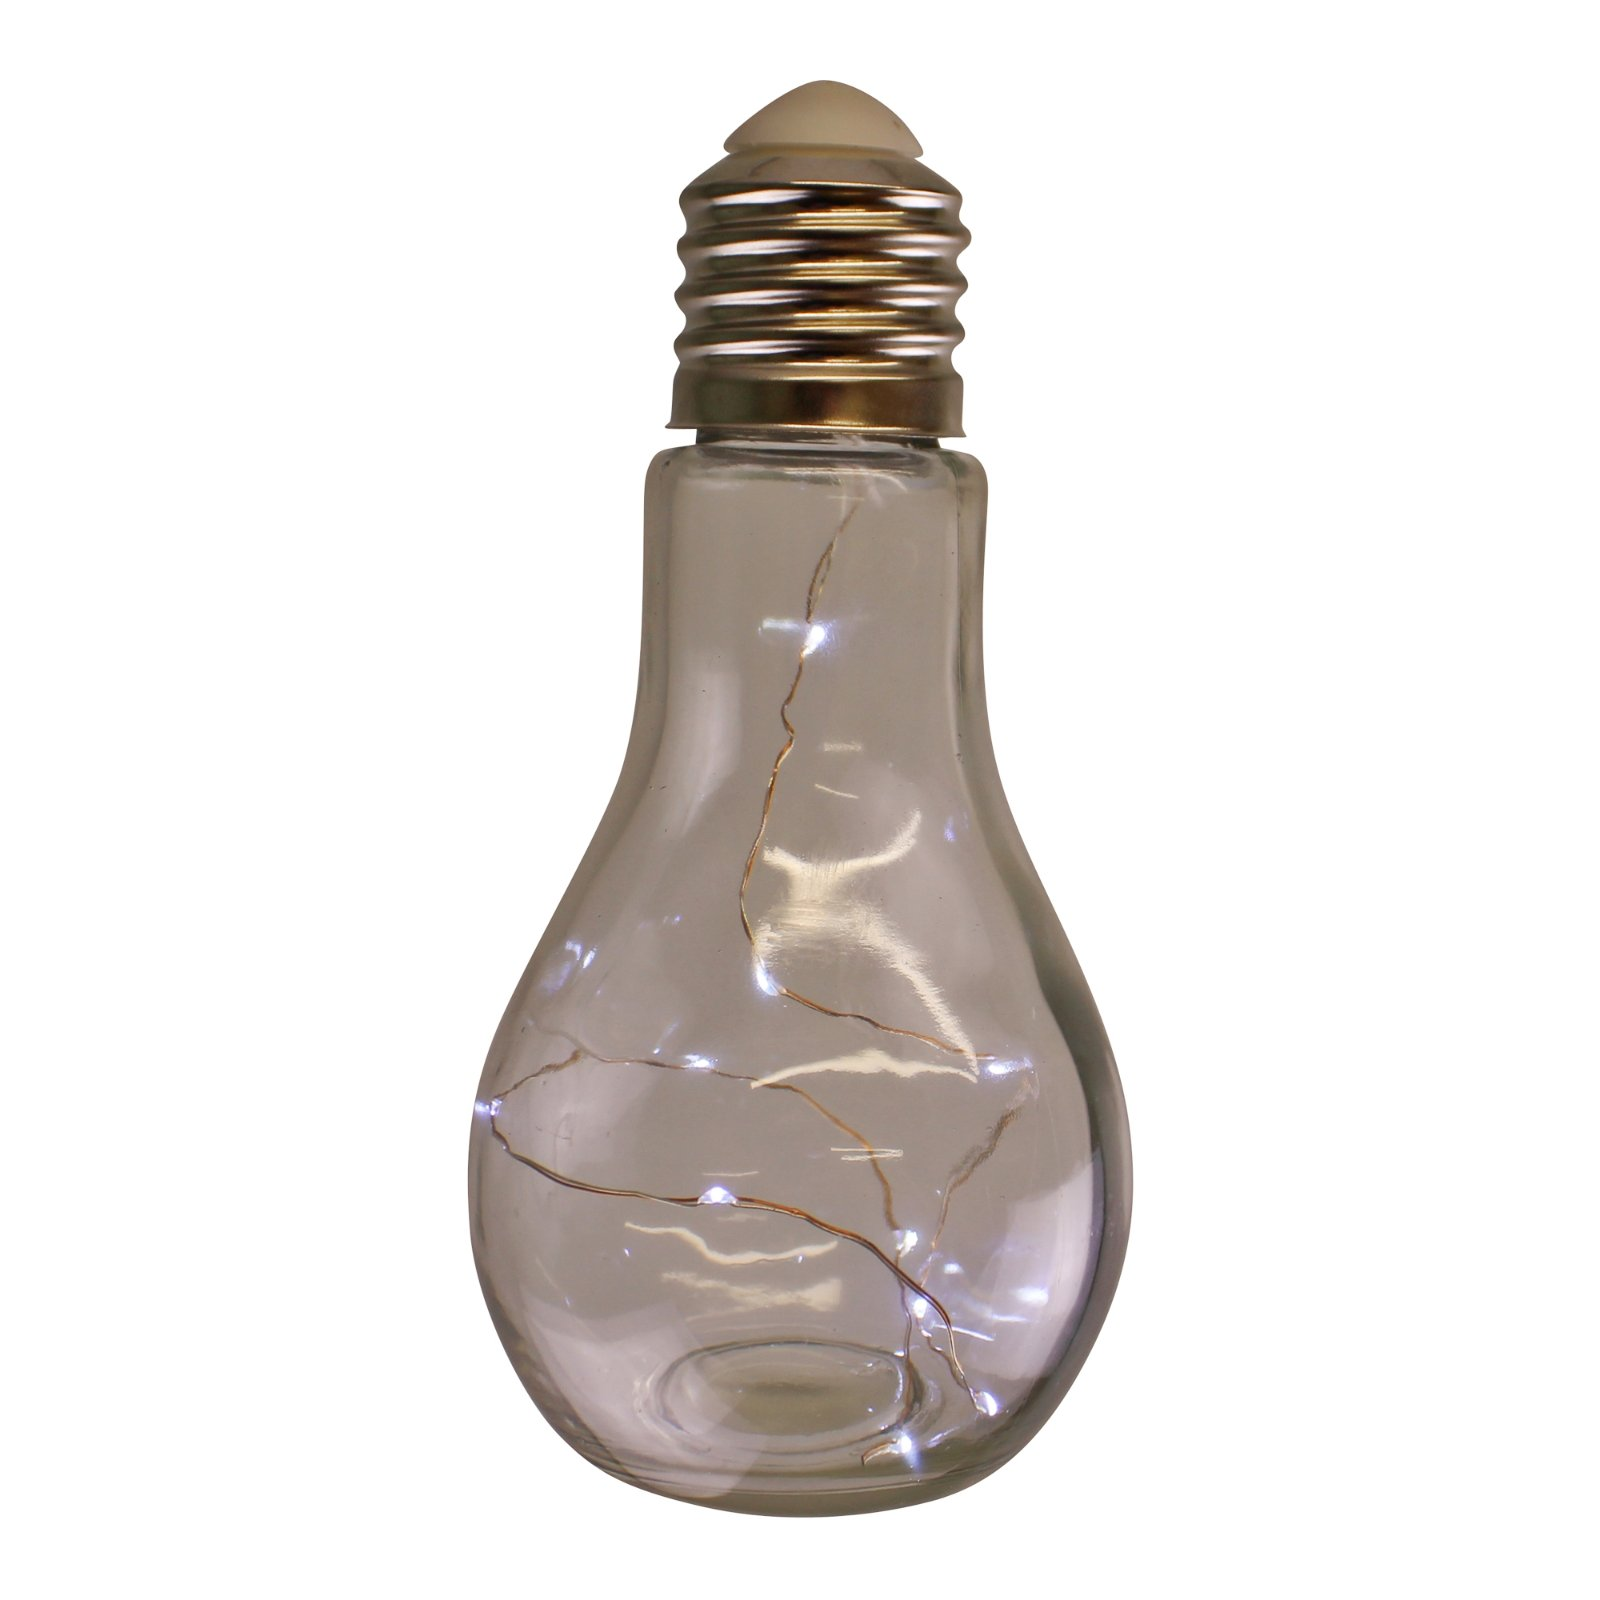 LED Filled Hanging Glass Lightbulb Light